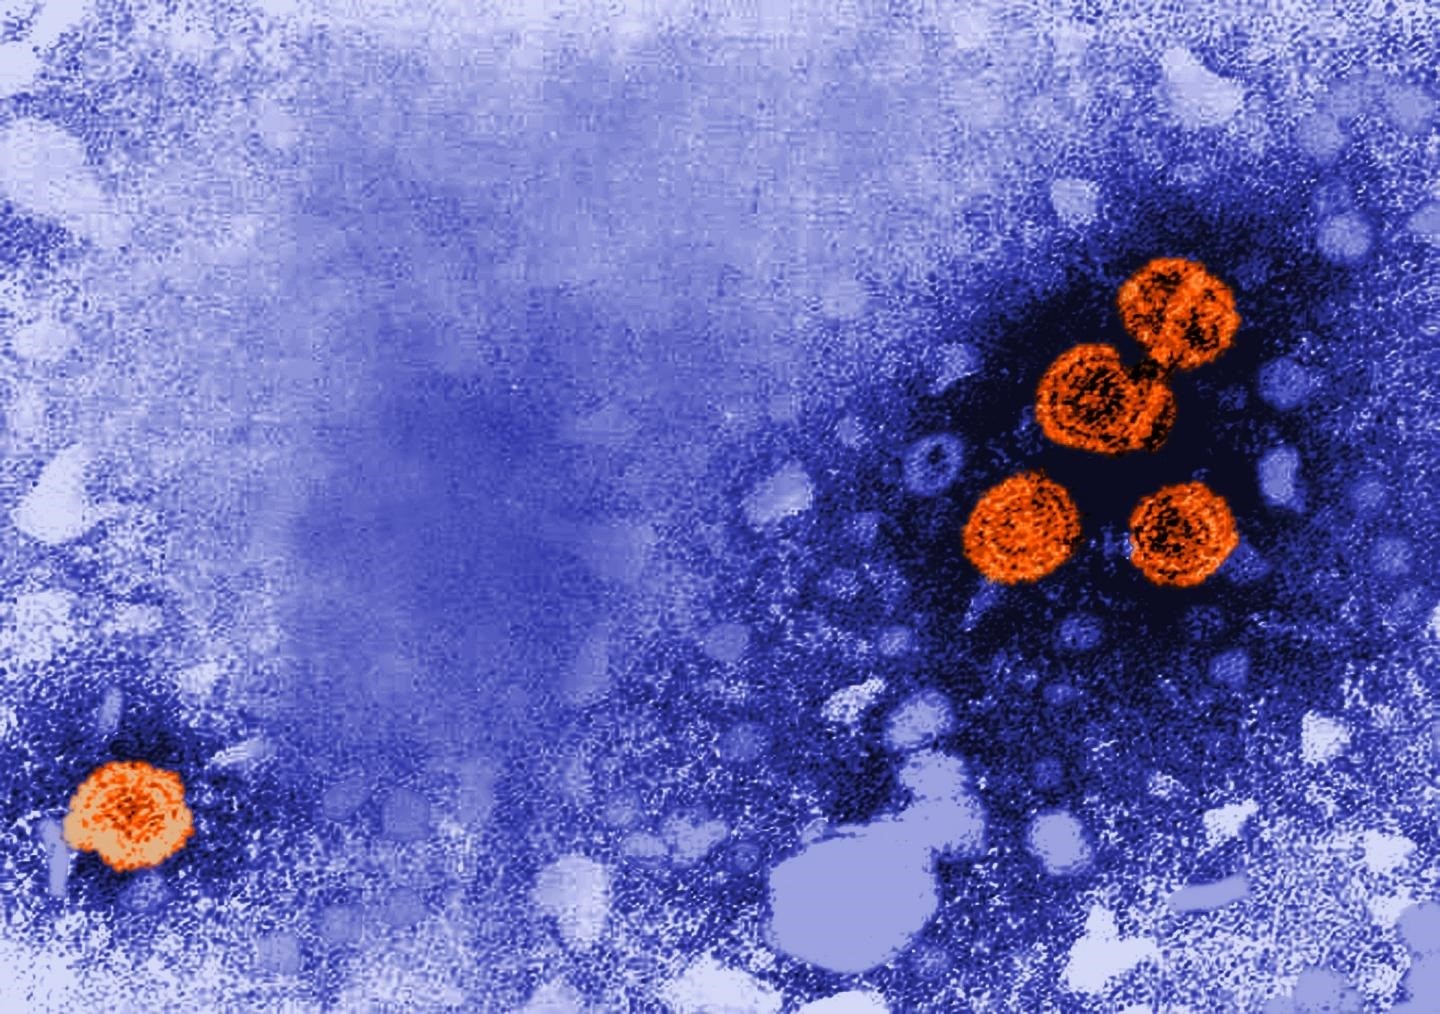 Imagen de microscopía electrónica de transmisión coloreada digitalmente revela la presencia de viriones de la hepatitis B (de color naranja). (CDC/DR. ERSKINE PALMER)
